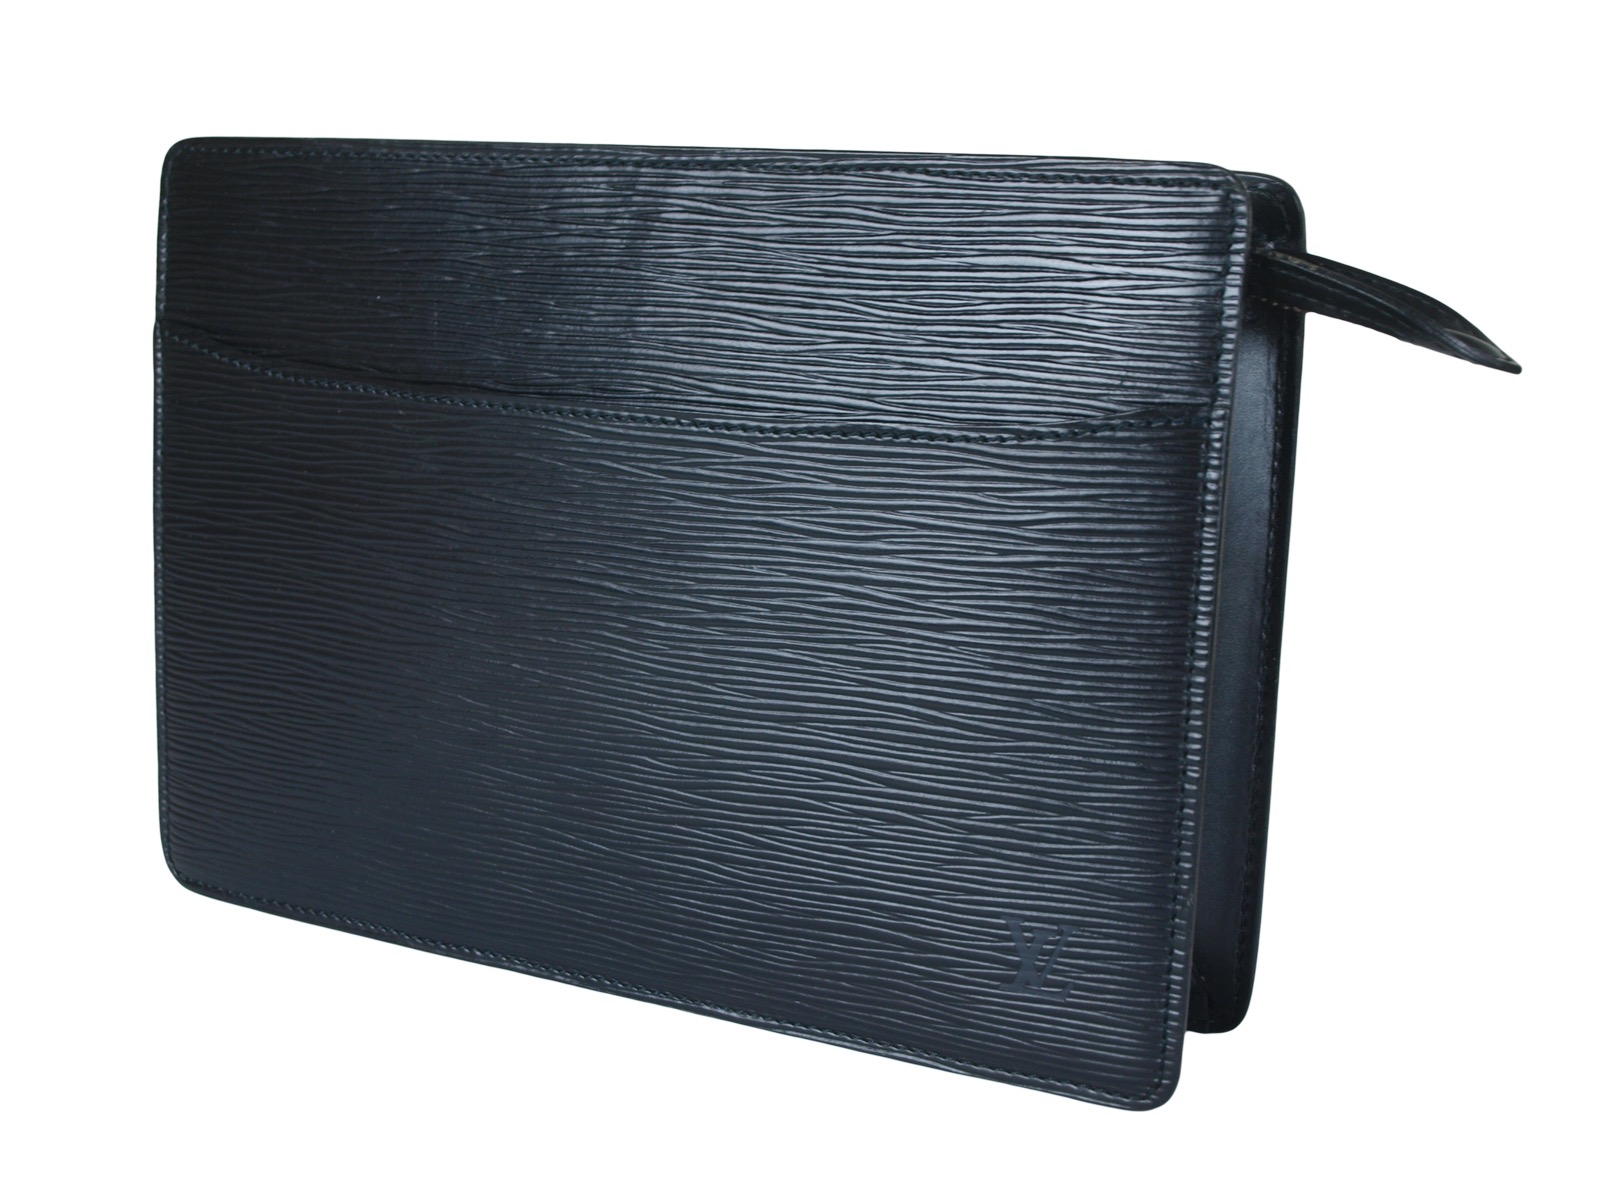 LOUIS VUITTON Pochette Homme Epi Leather Black Clutch Bag LP3144 | eBay